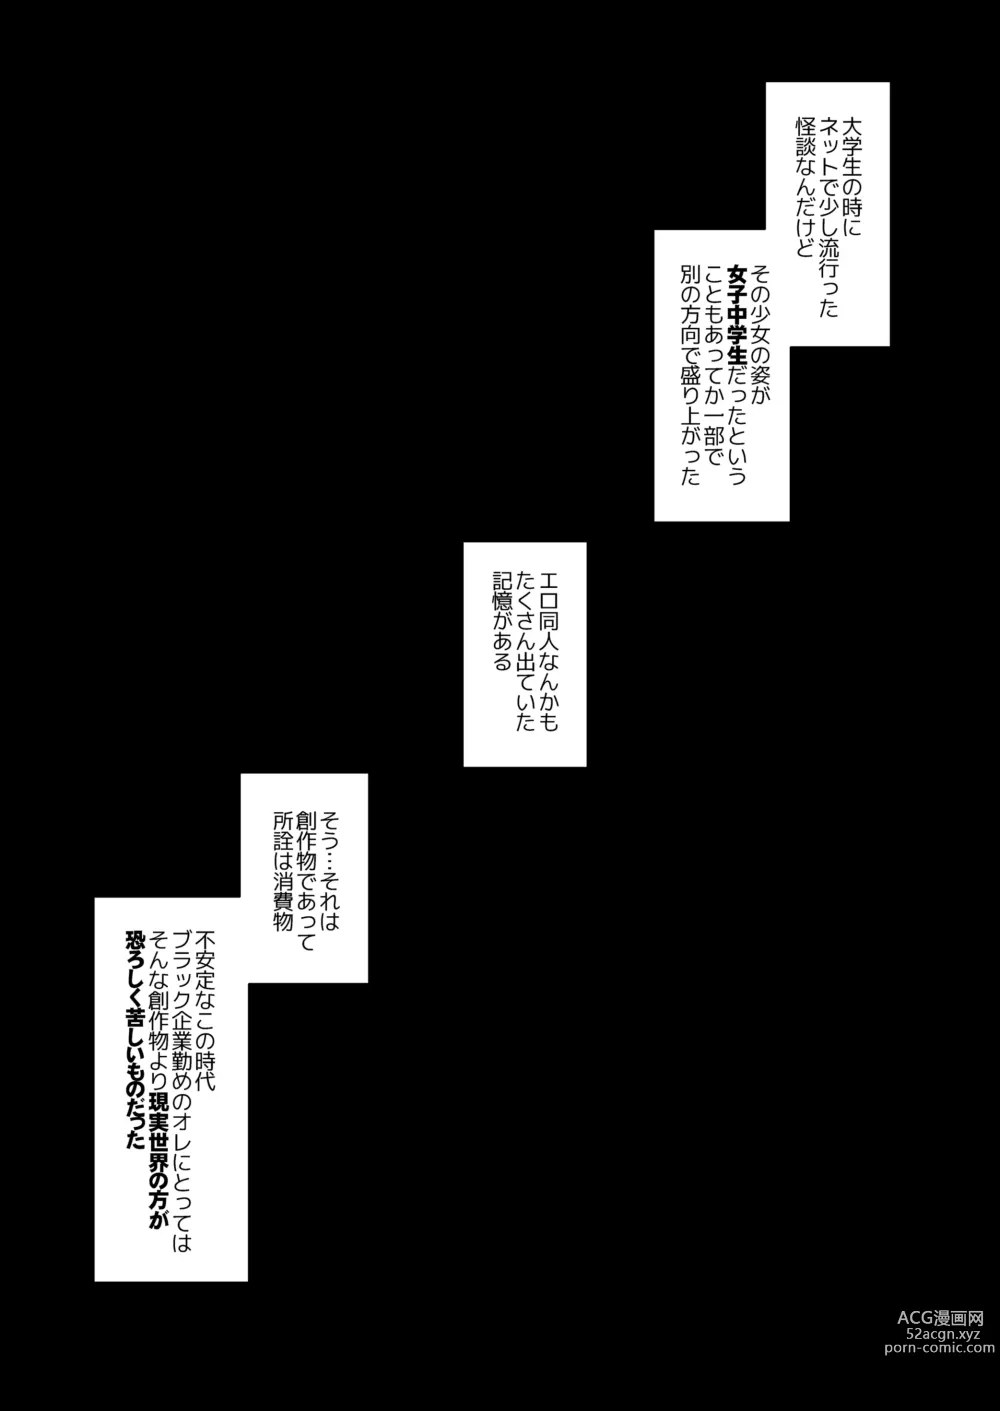 Page 7 of doujinshi 引っ越し先が事故物件だけど最高なわけだが。